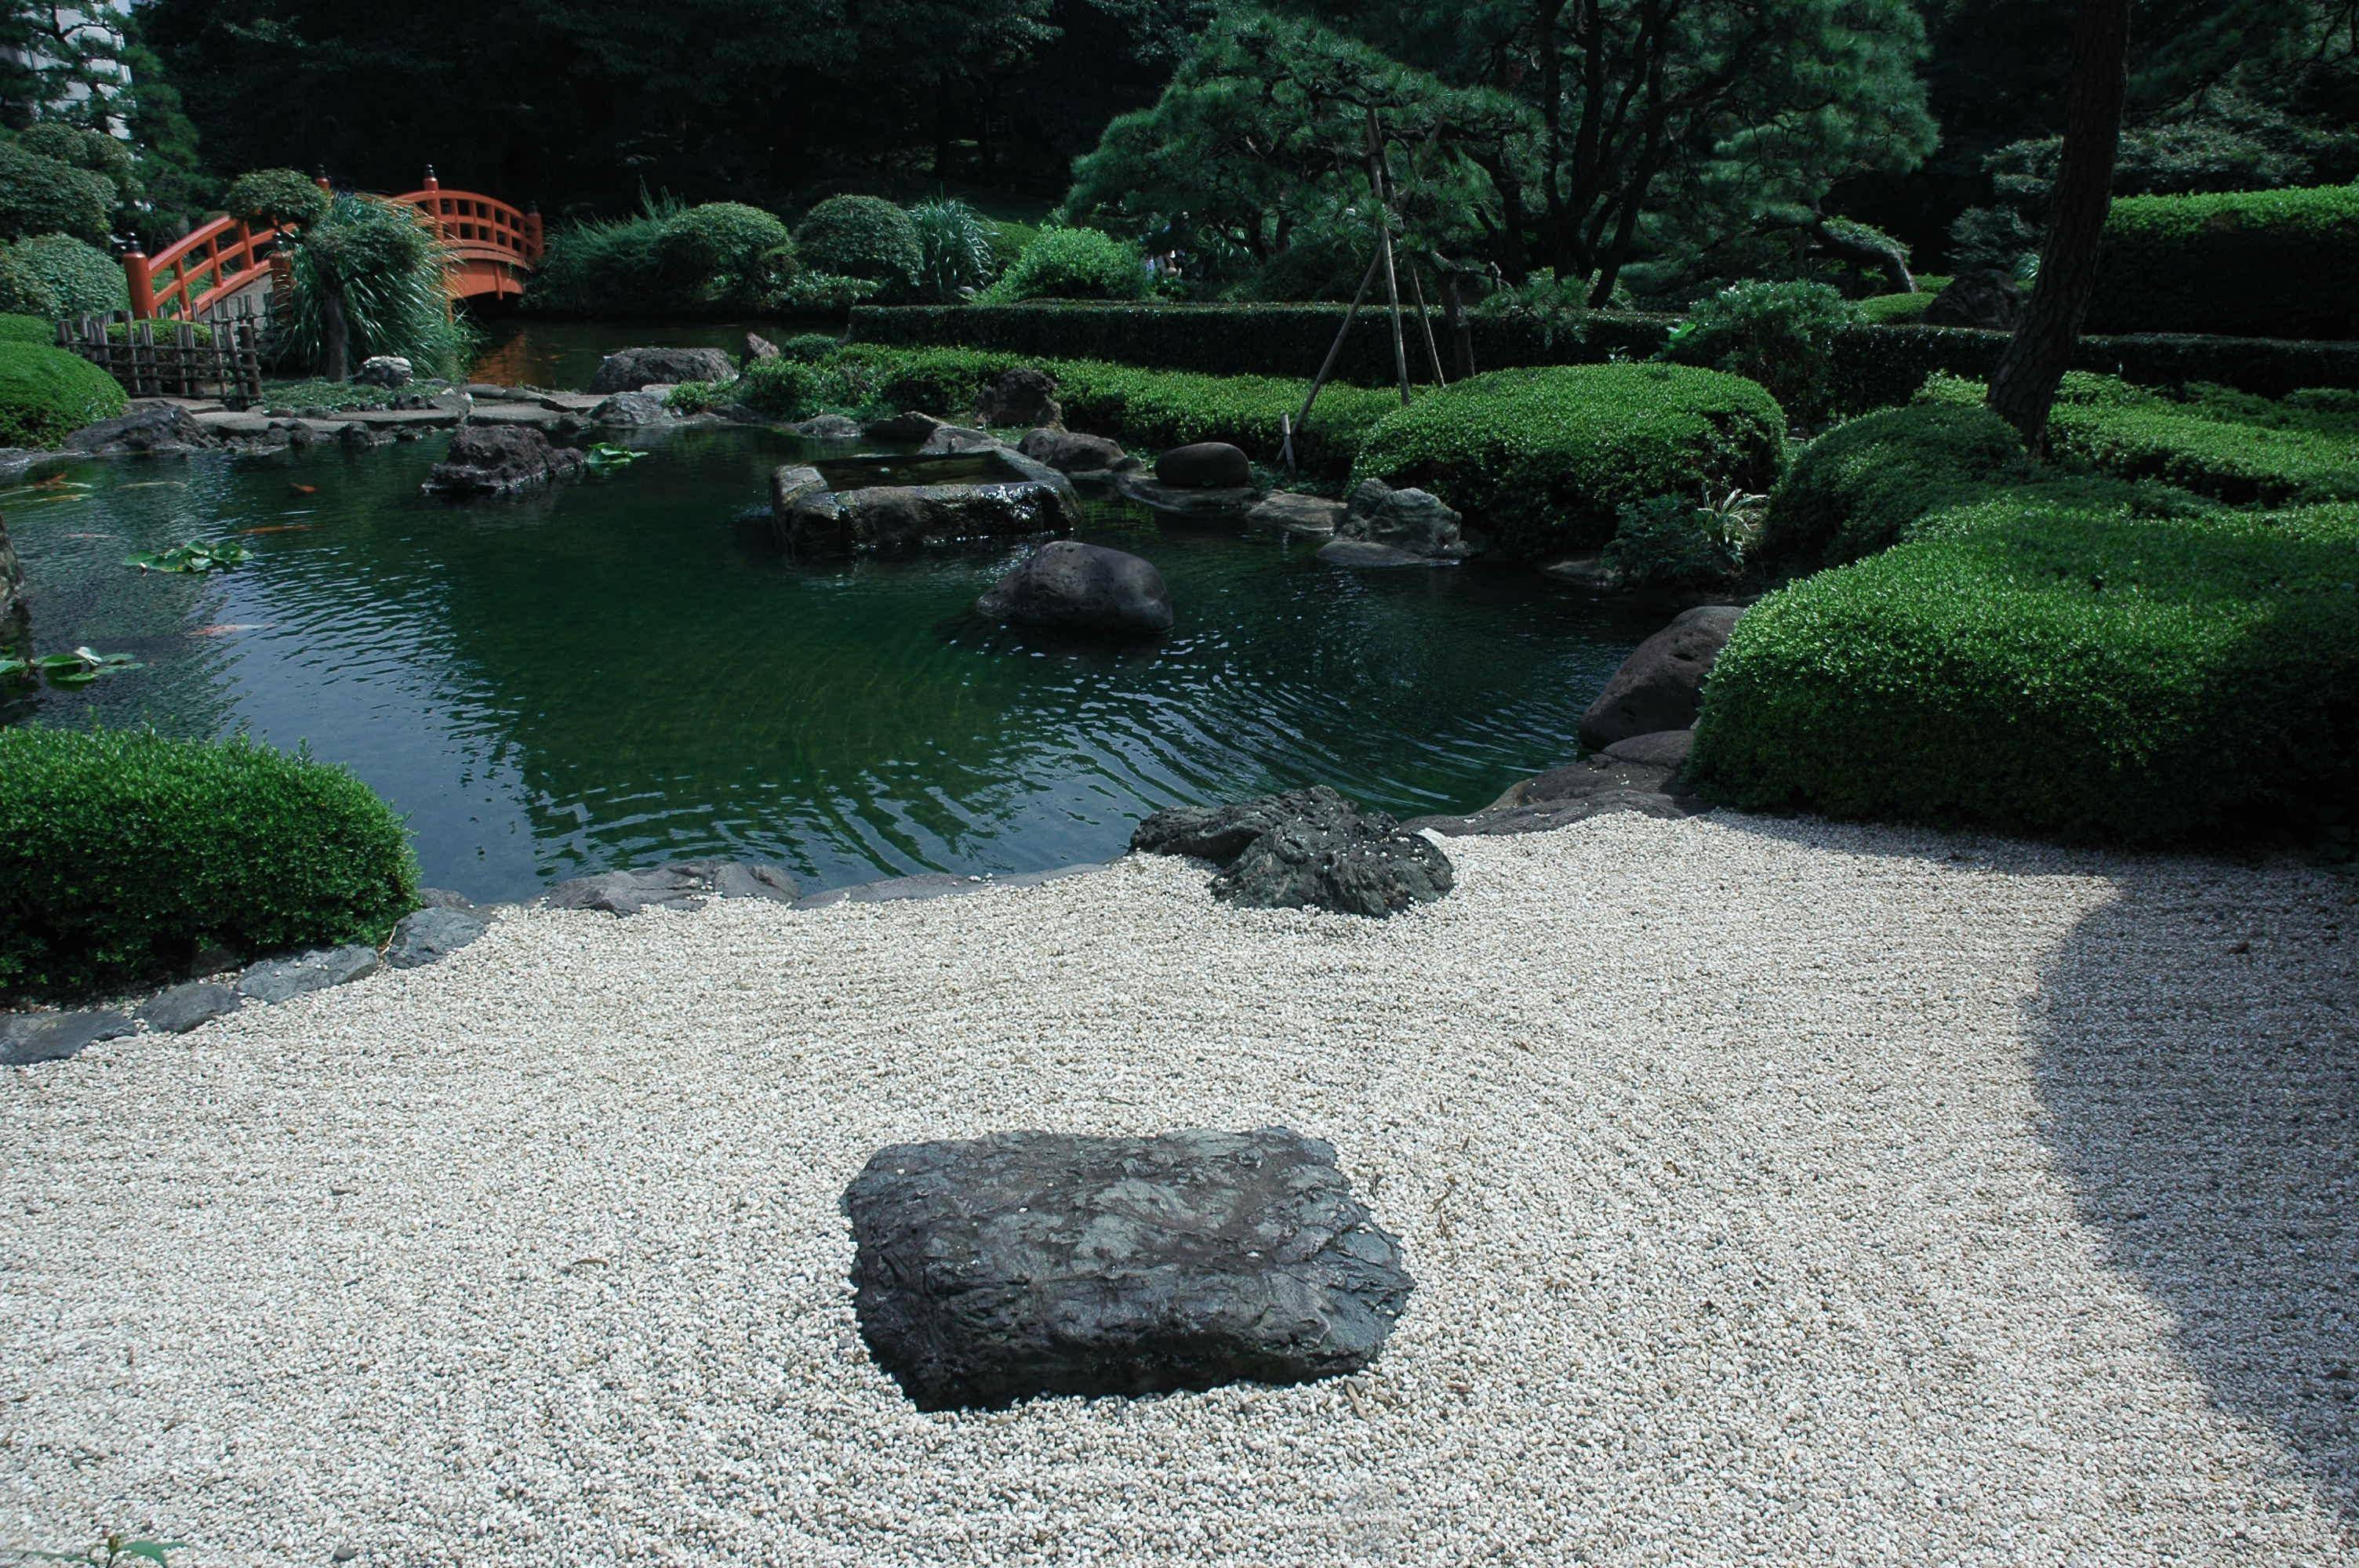 Backyard Japanese Rock Garden